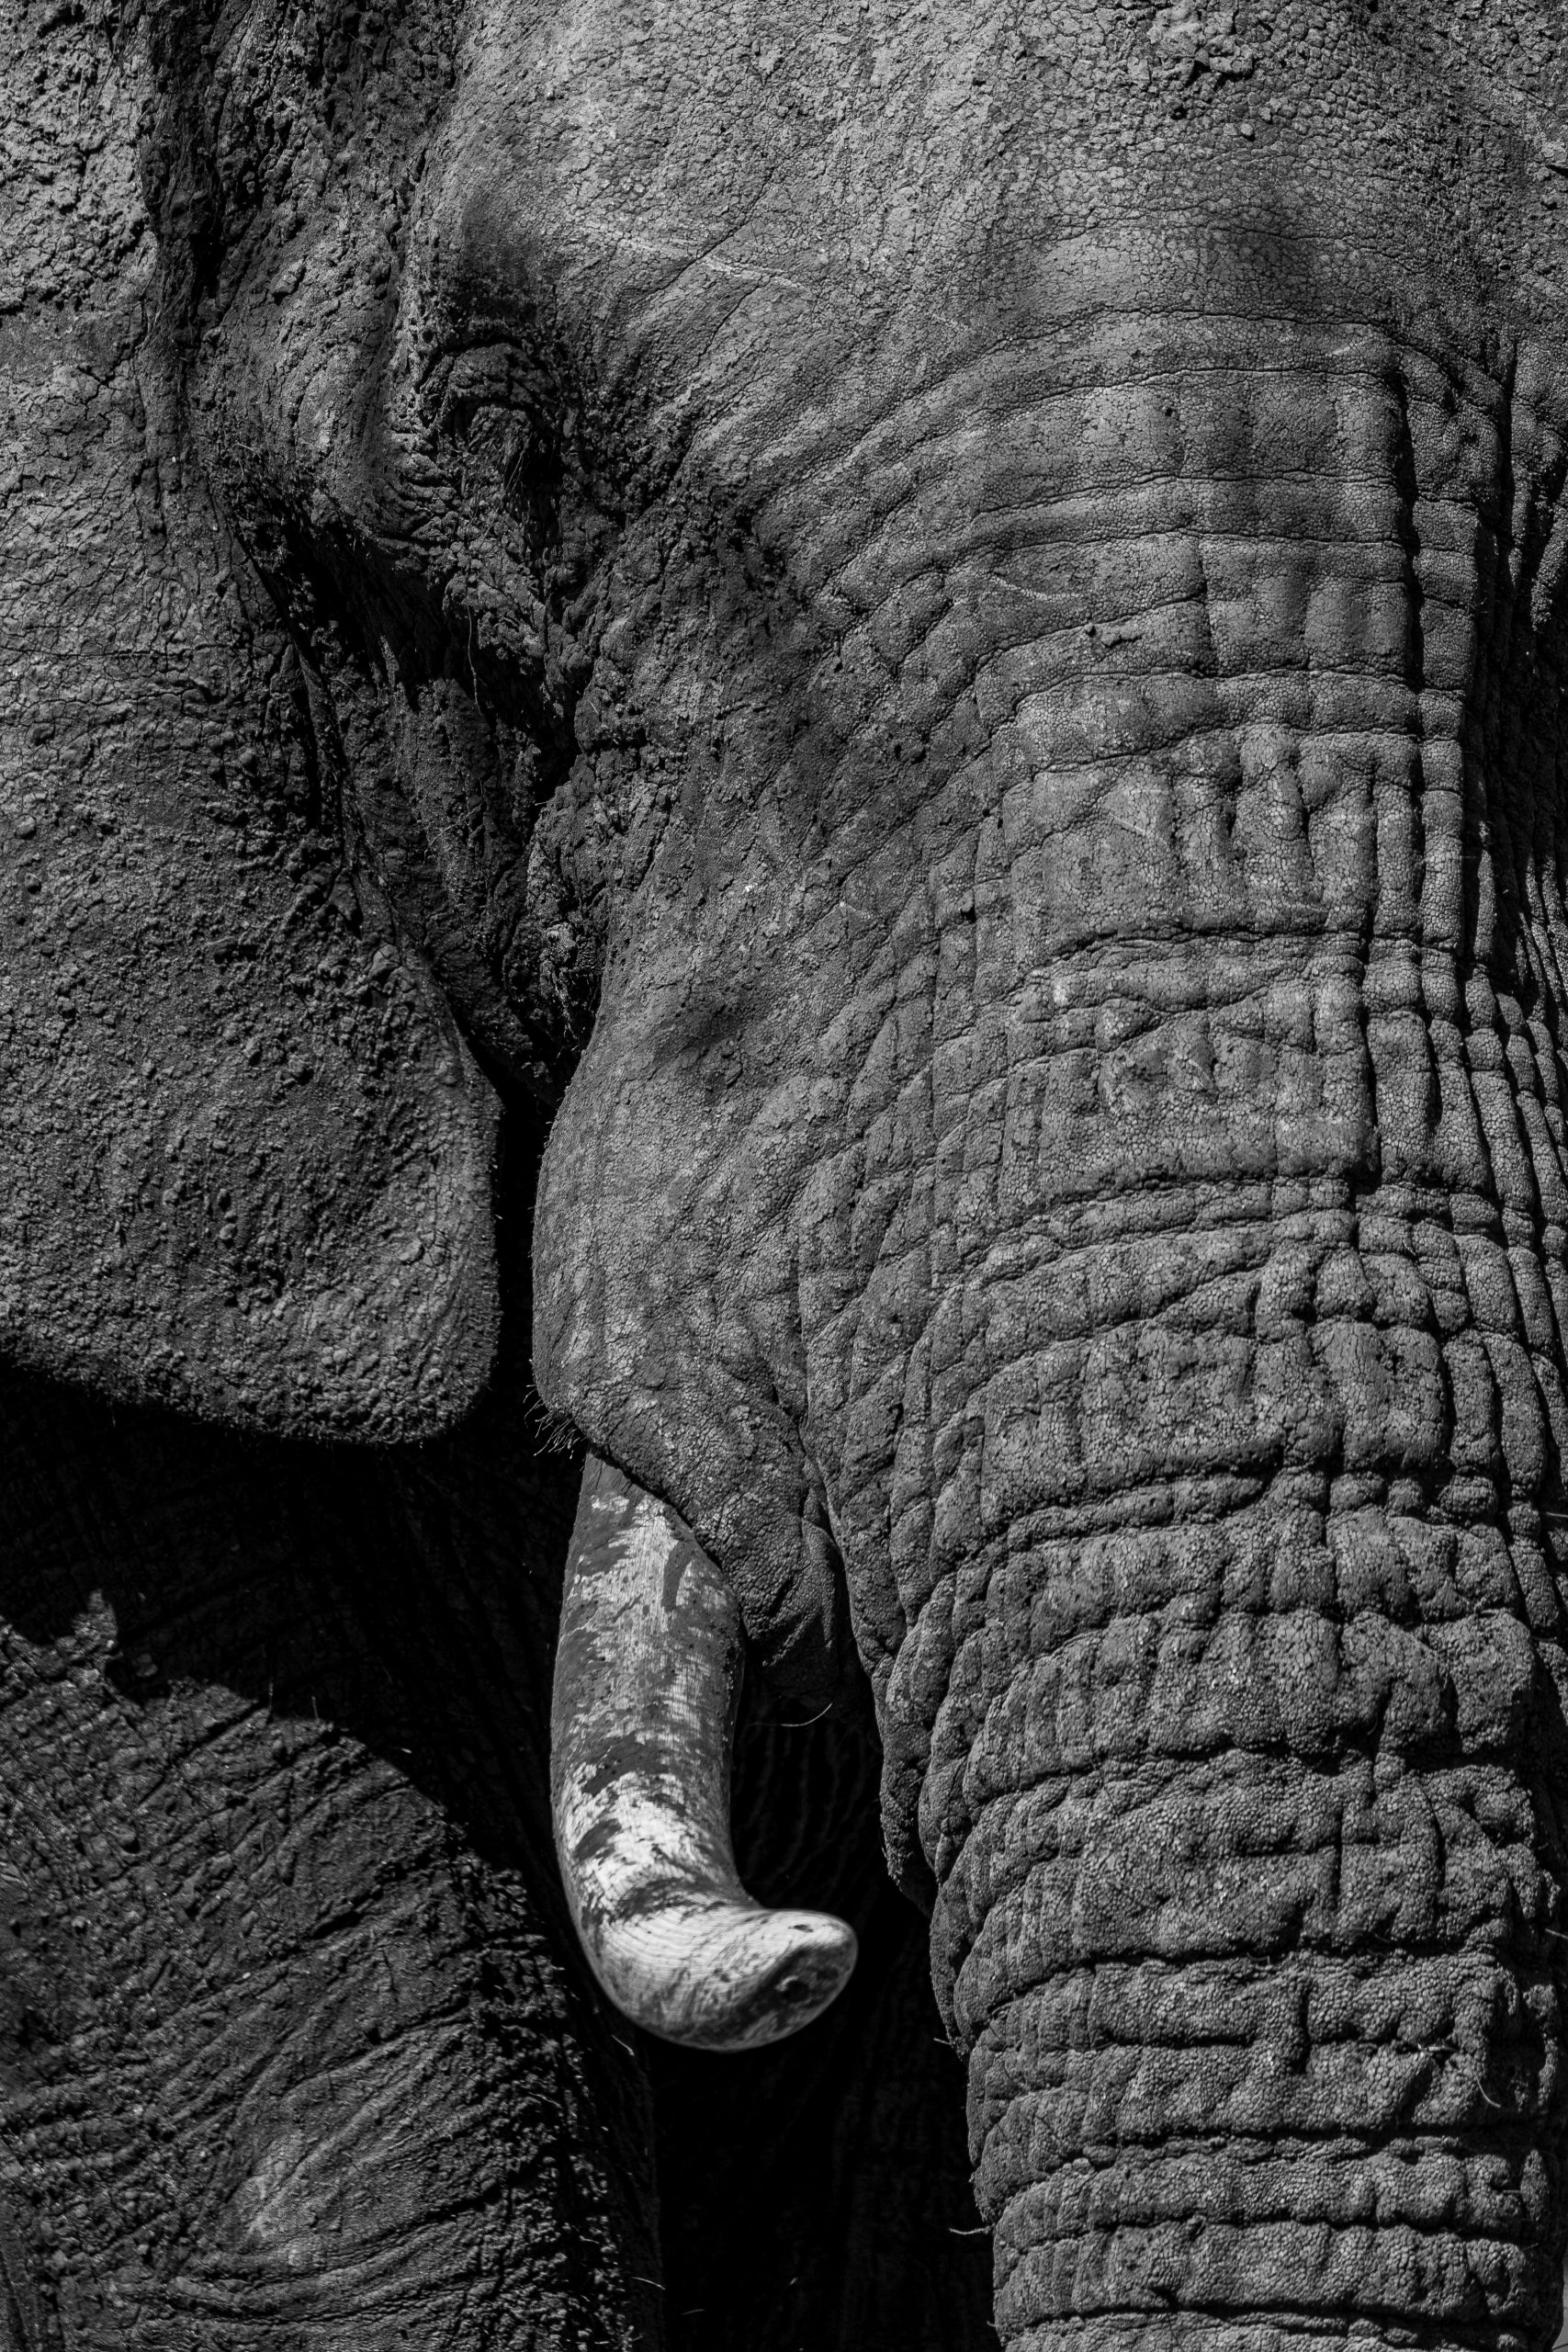 Close up elephant tusk